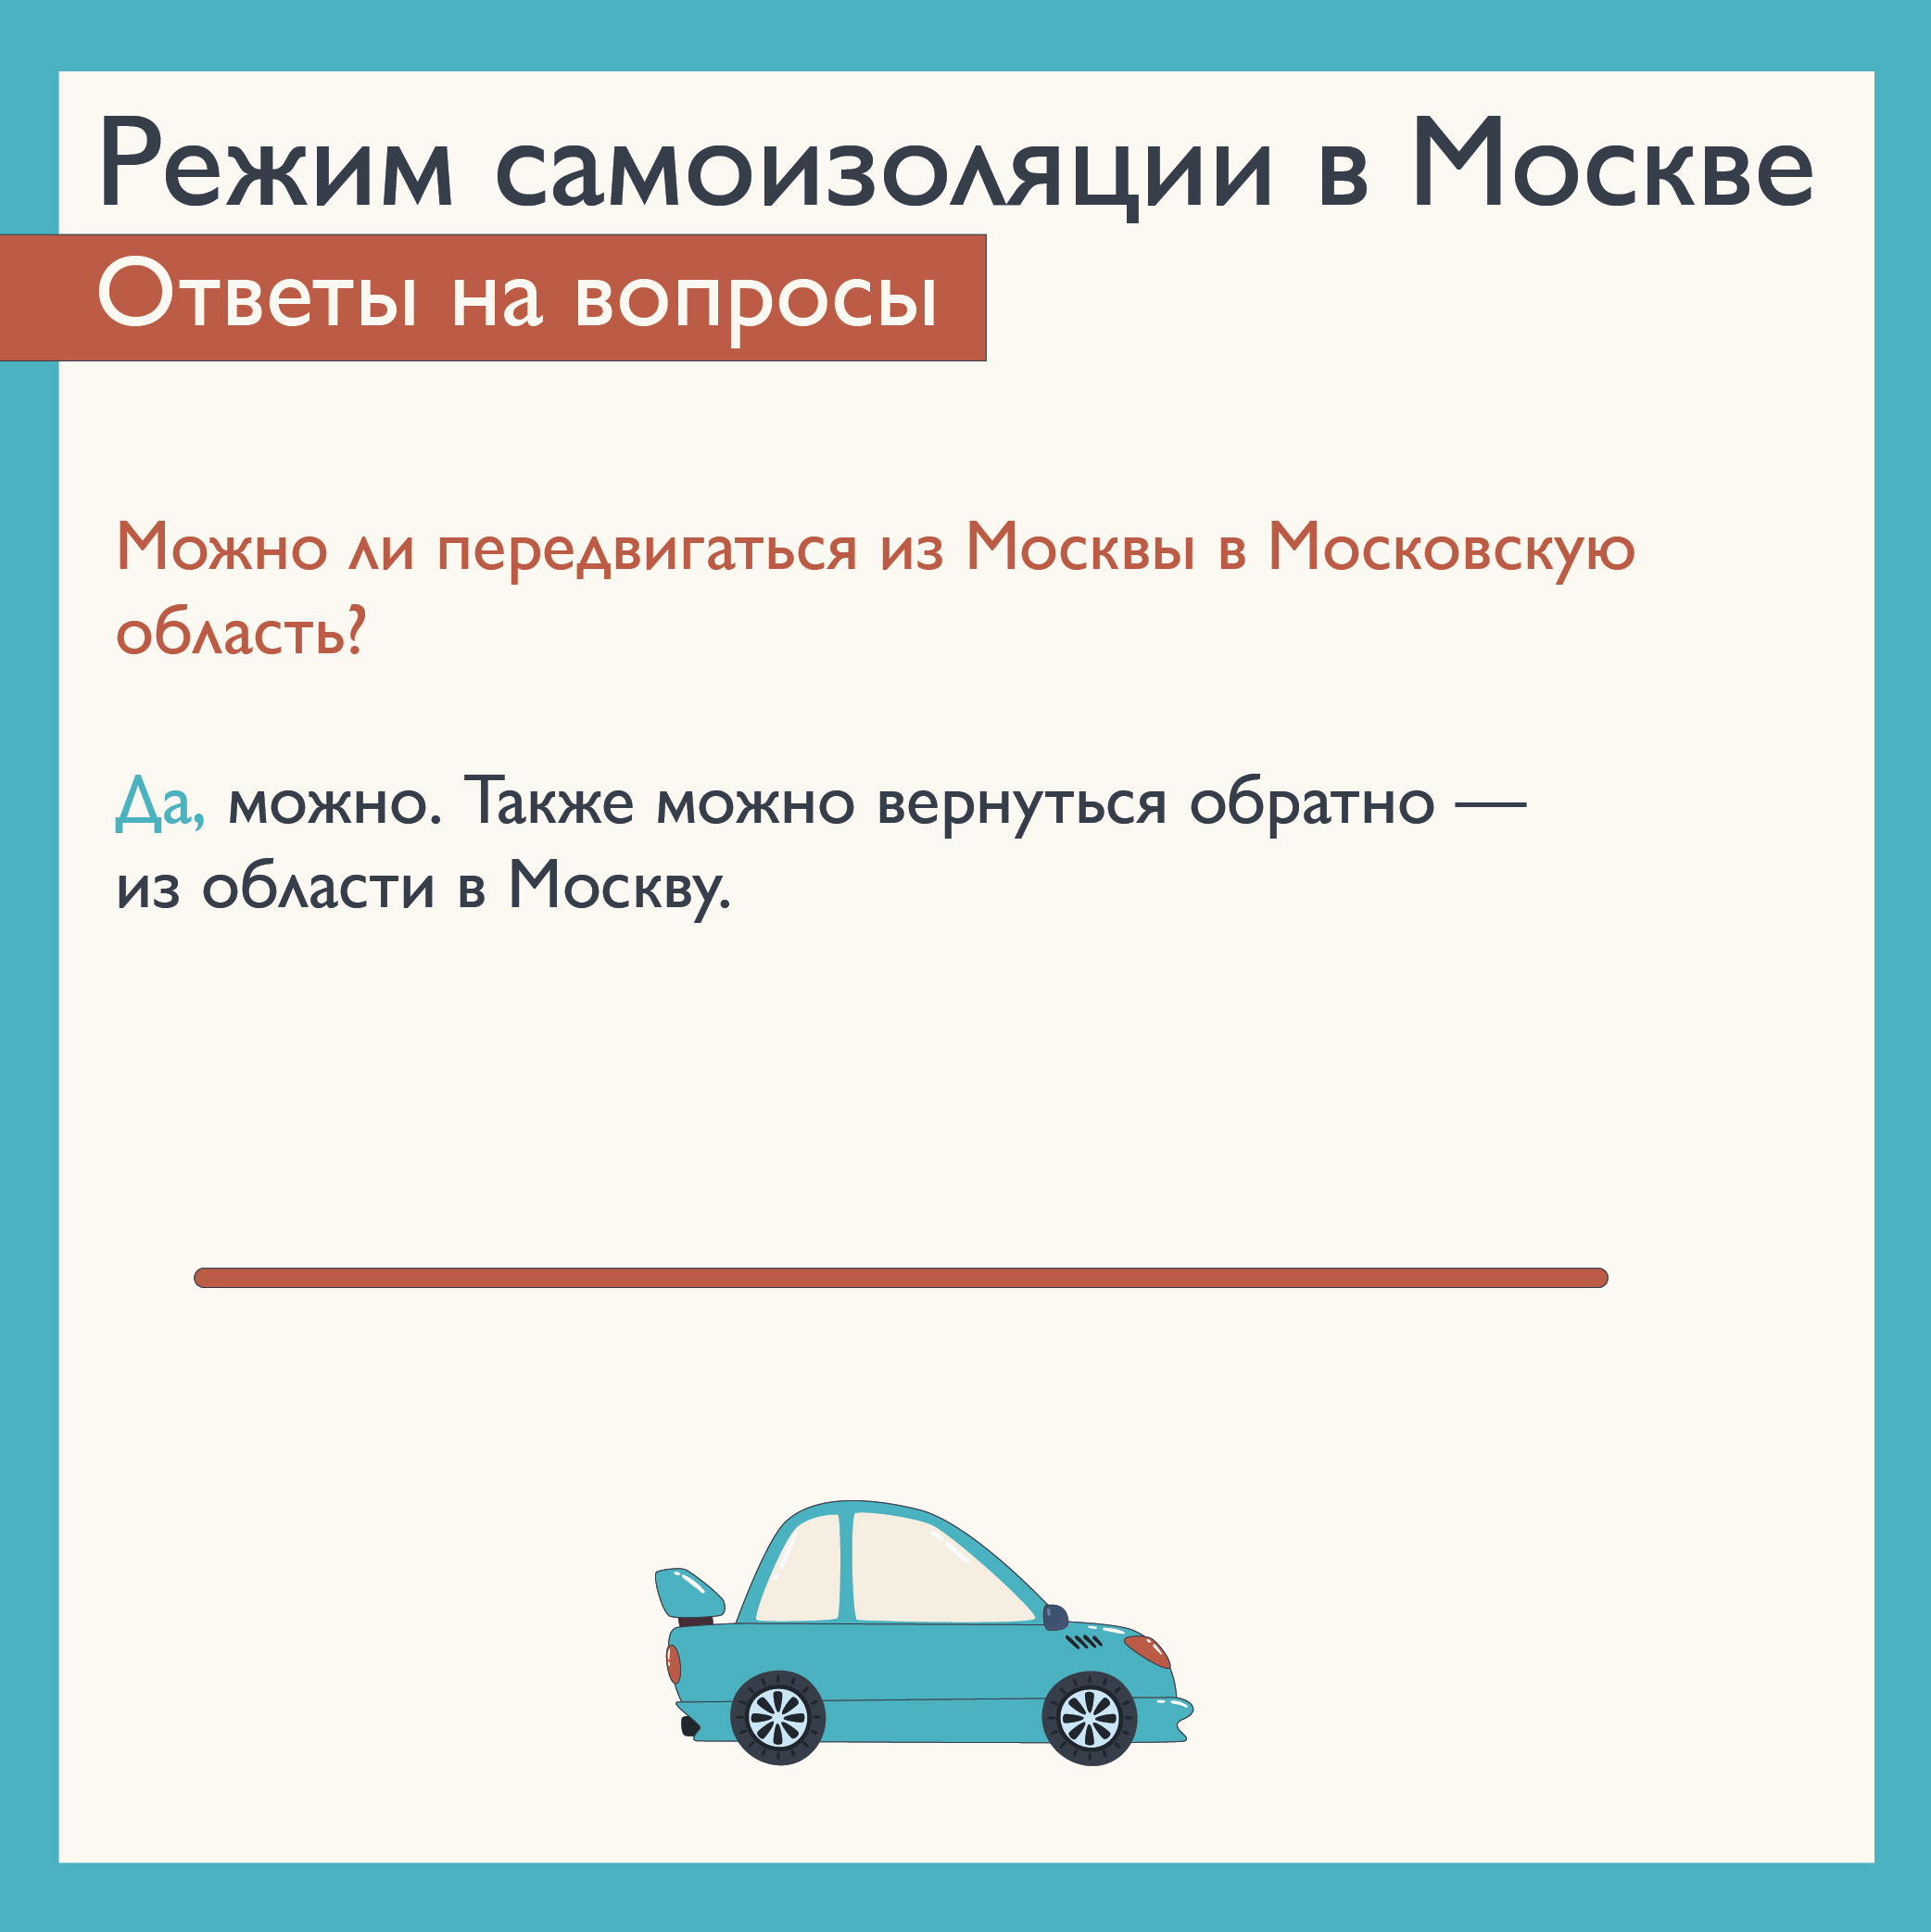 Можно ли выехать на автомобиле. Передвижение на личном авто. Куда можно выезжать на автомобиле в режиме самоизоляции. Поездки по Москве личный автомобиль голосование. Можно ли поехать на дачу на своей машине во время самоизоляции.